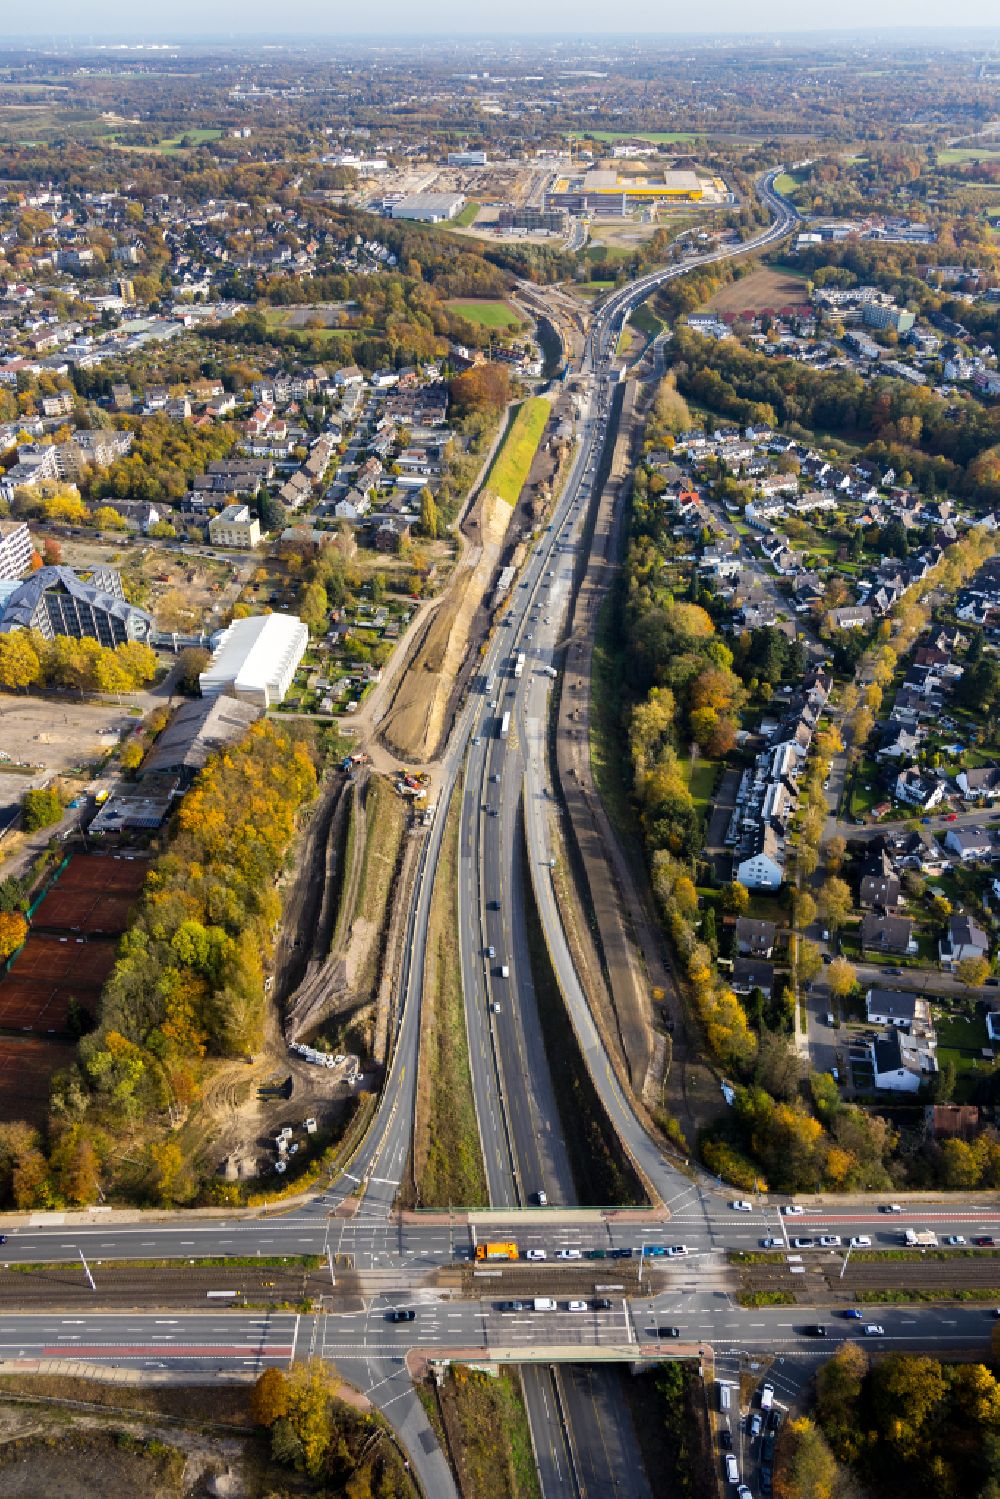 Luftbild Bochum - Brückenbauwerk entlang der Universitätsstraße und Verlauf der Autobahn BAB 448 in Bochum im Bundesland Nordrhein-Westfalen, Deutschland